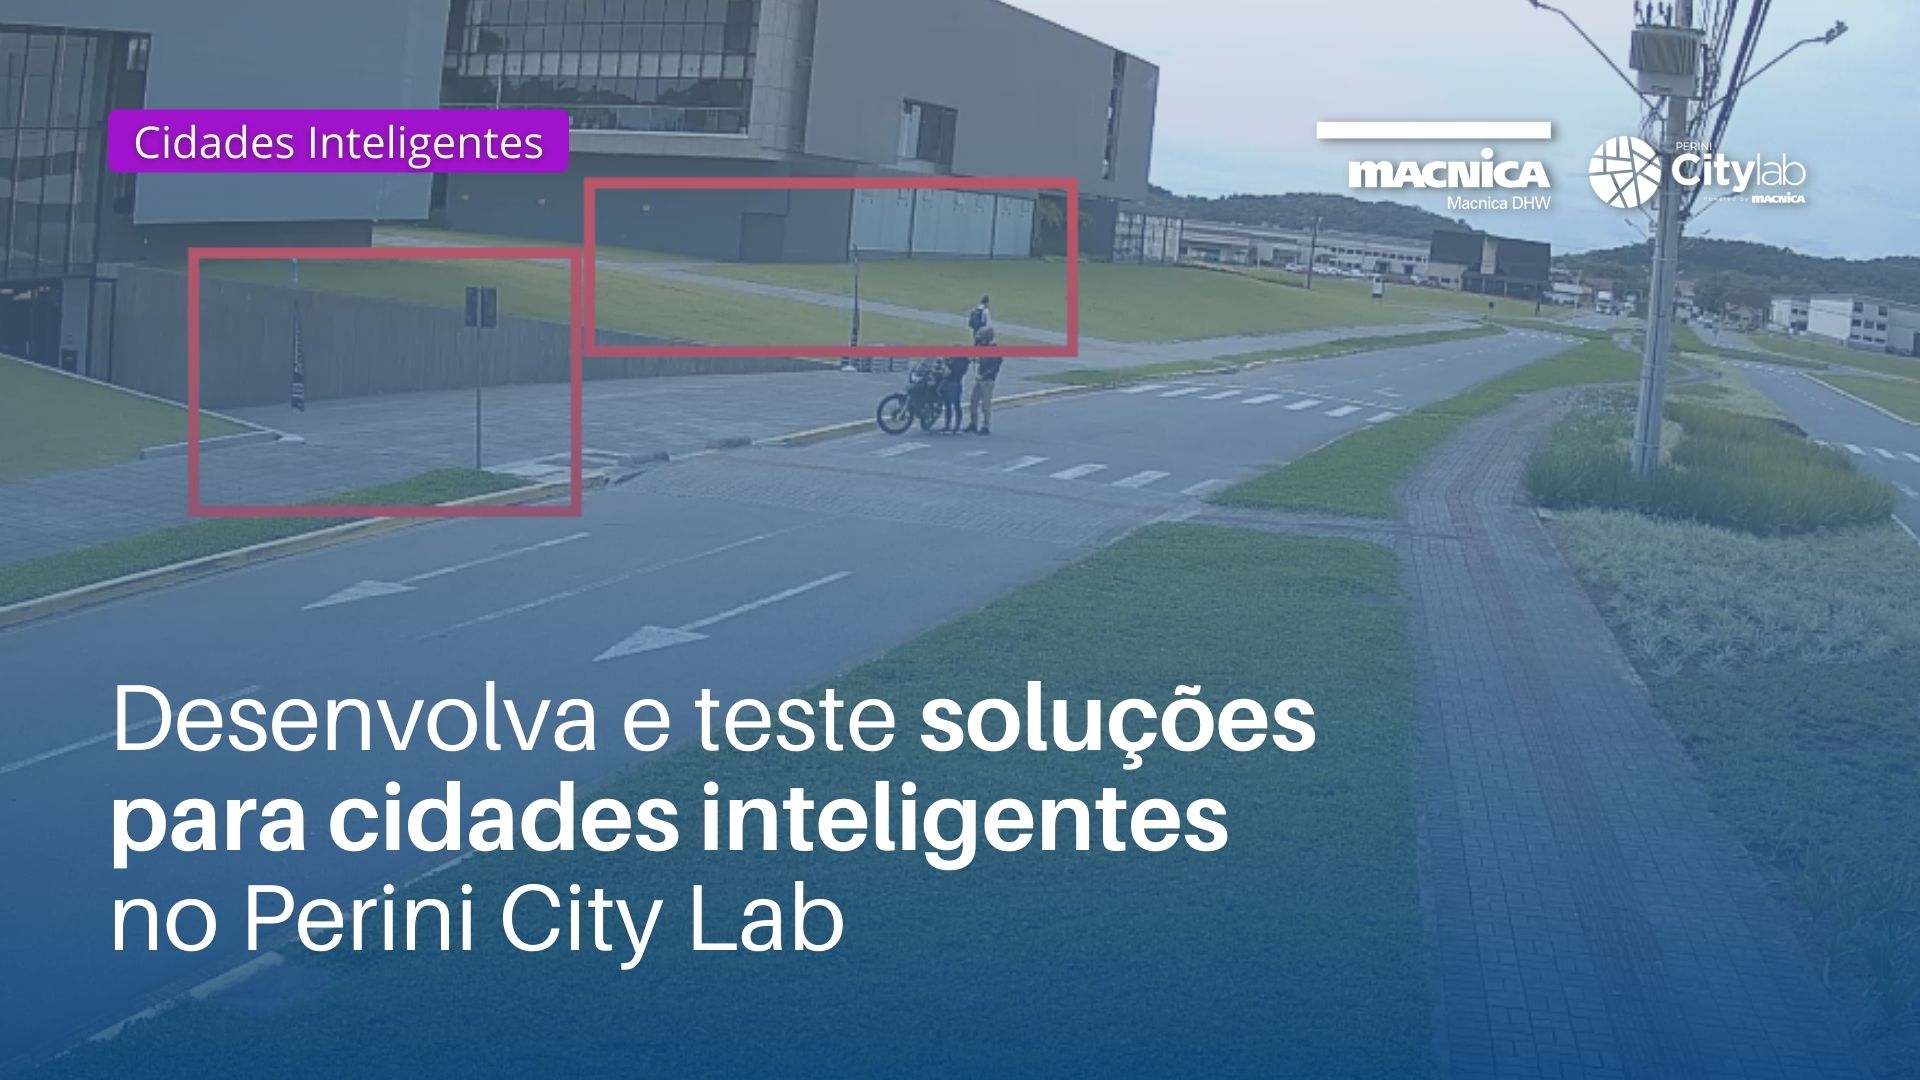 Soluções para cidades inteligentes é no Perini City Lab